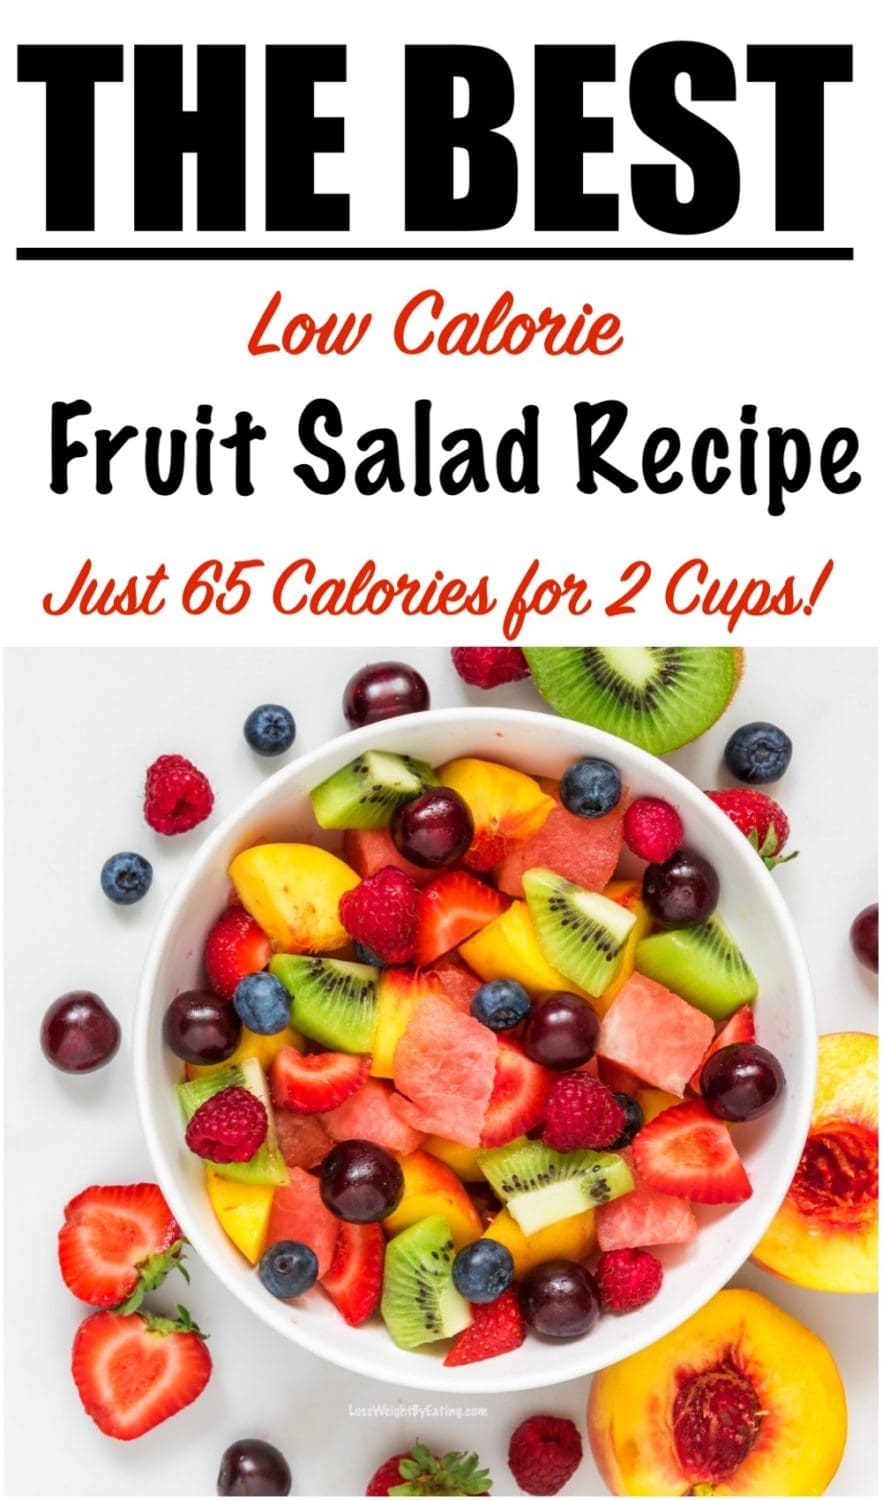 Pin Fruit Salad Recipe to Pinterest